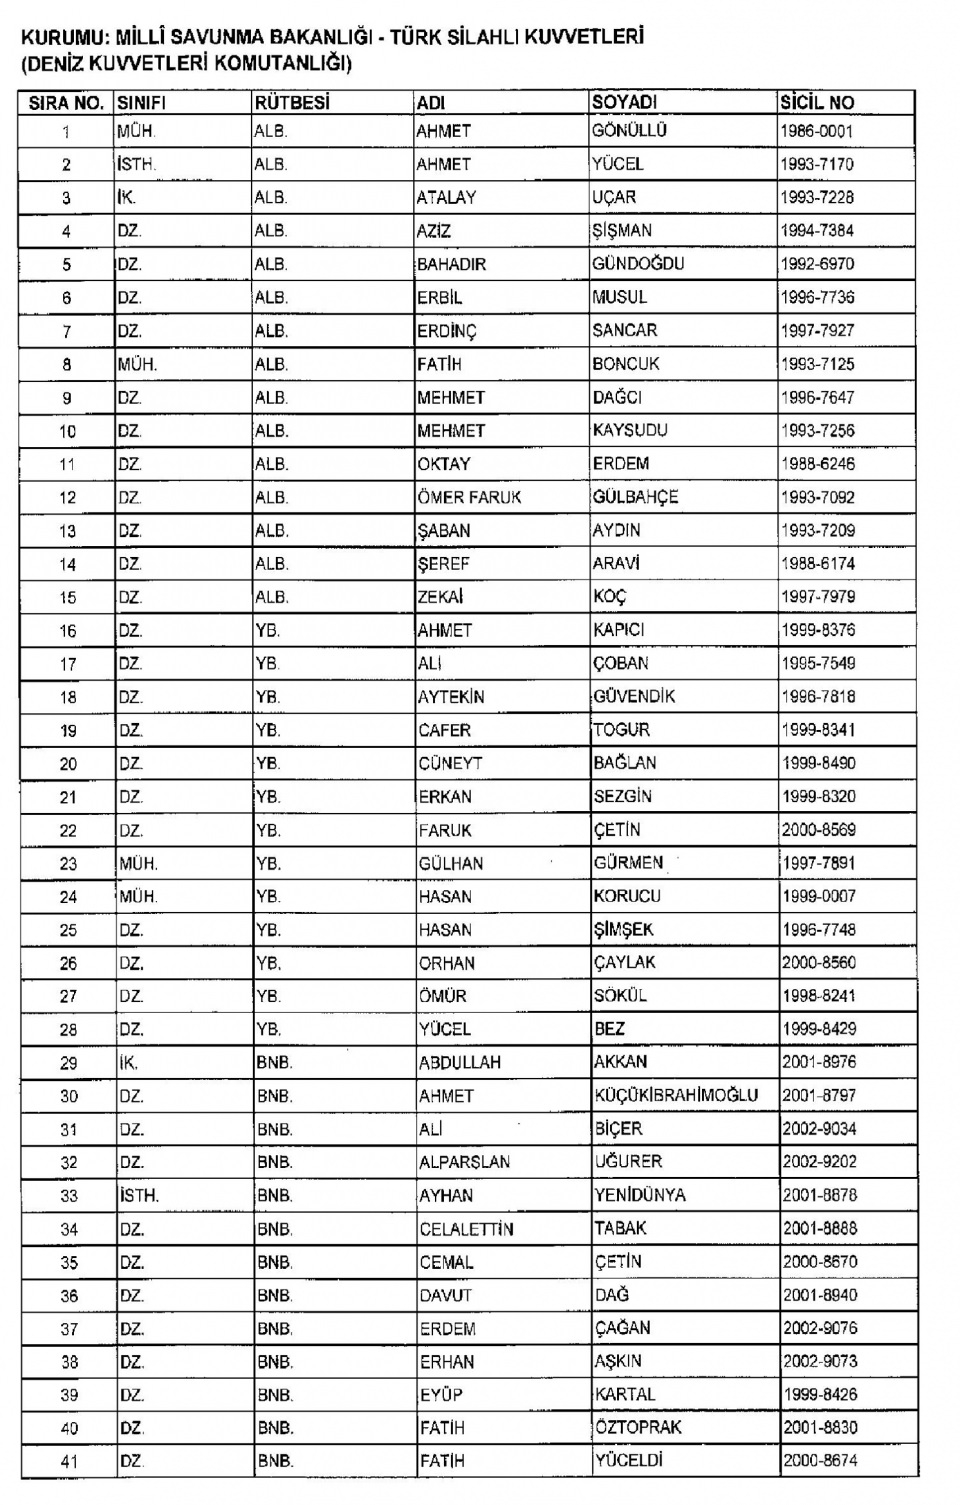 Kamudan ihraç edilenlerin isim isim listesi 10